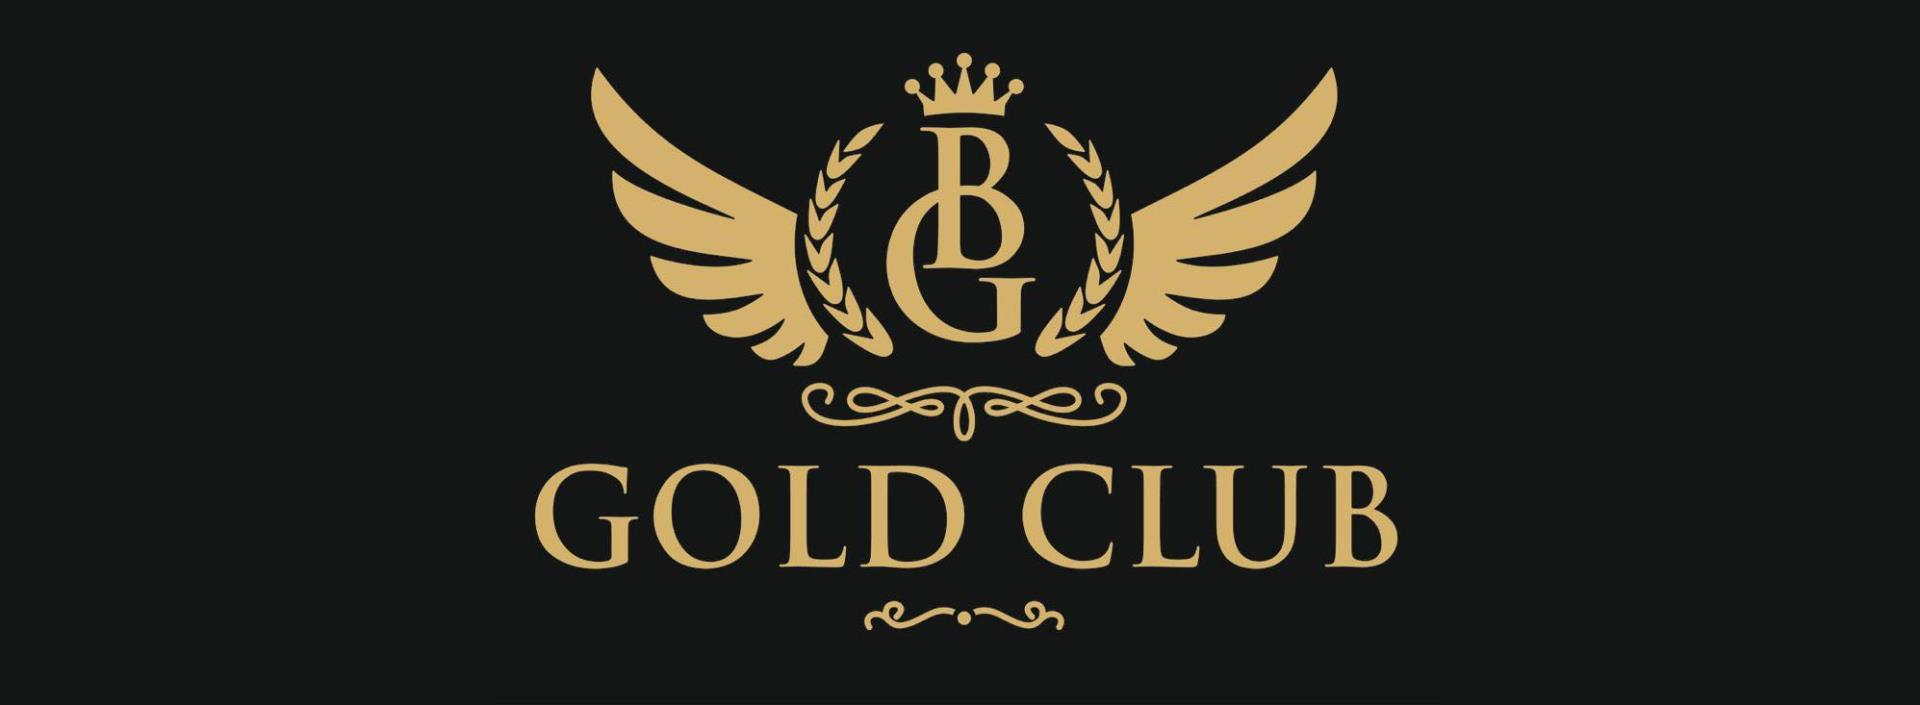 GOLD CLUB 